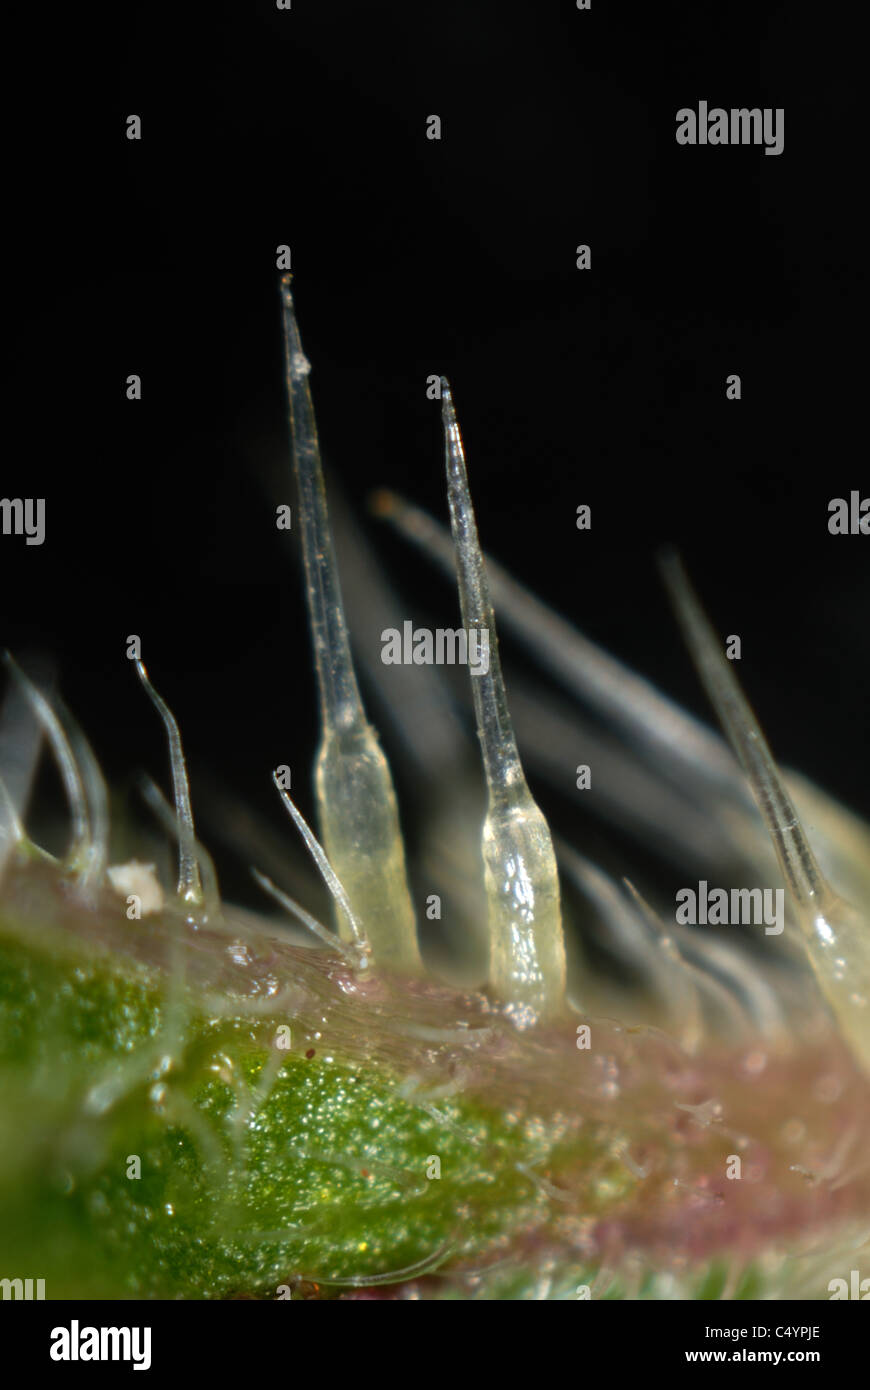 Mikrophotographie Brennnesselpflanzen Haare von einer Brennnessel (Urtica Dioica) Stockfoto